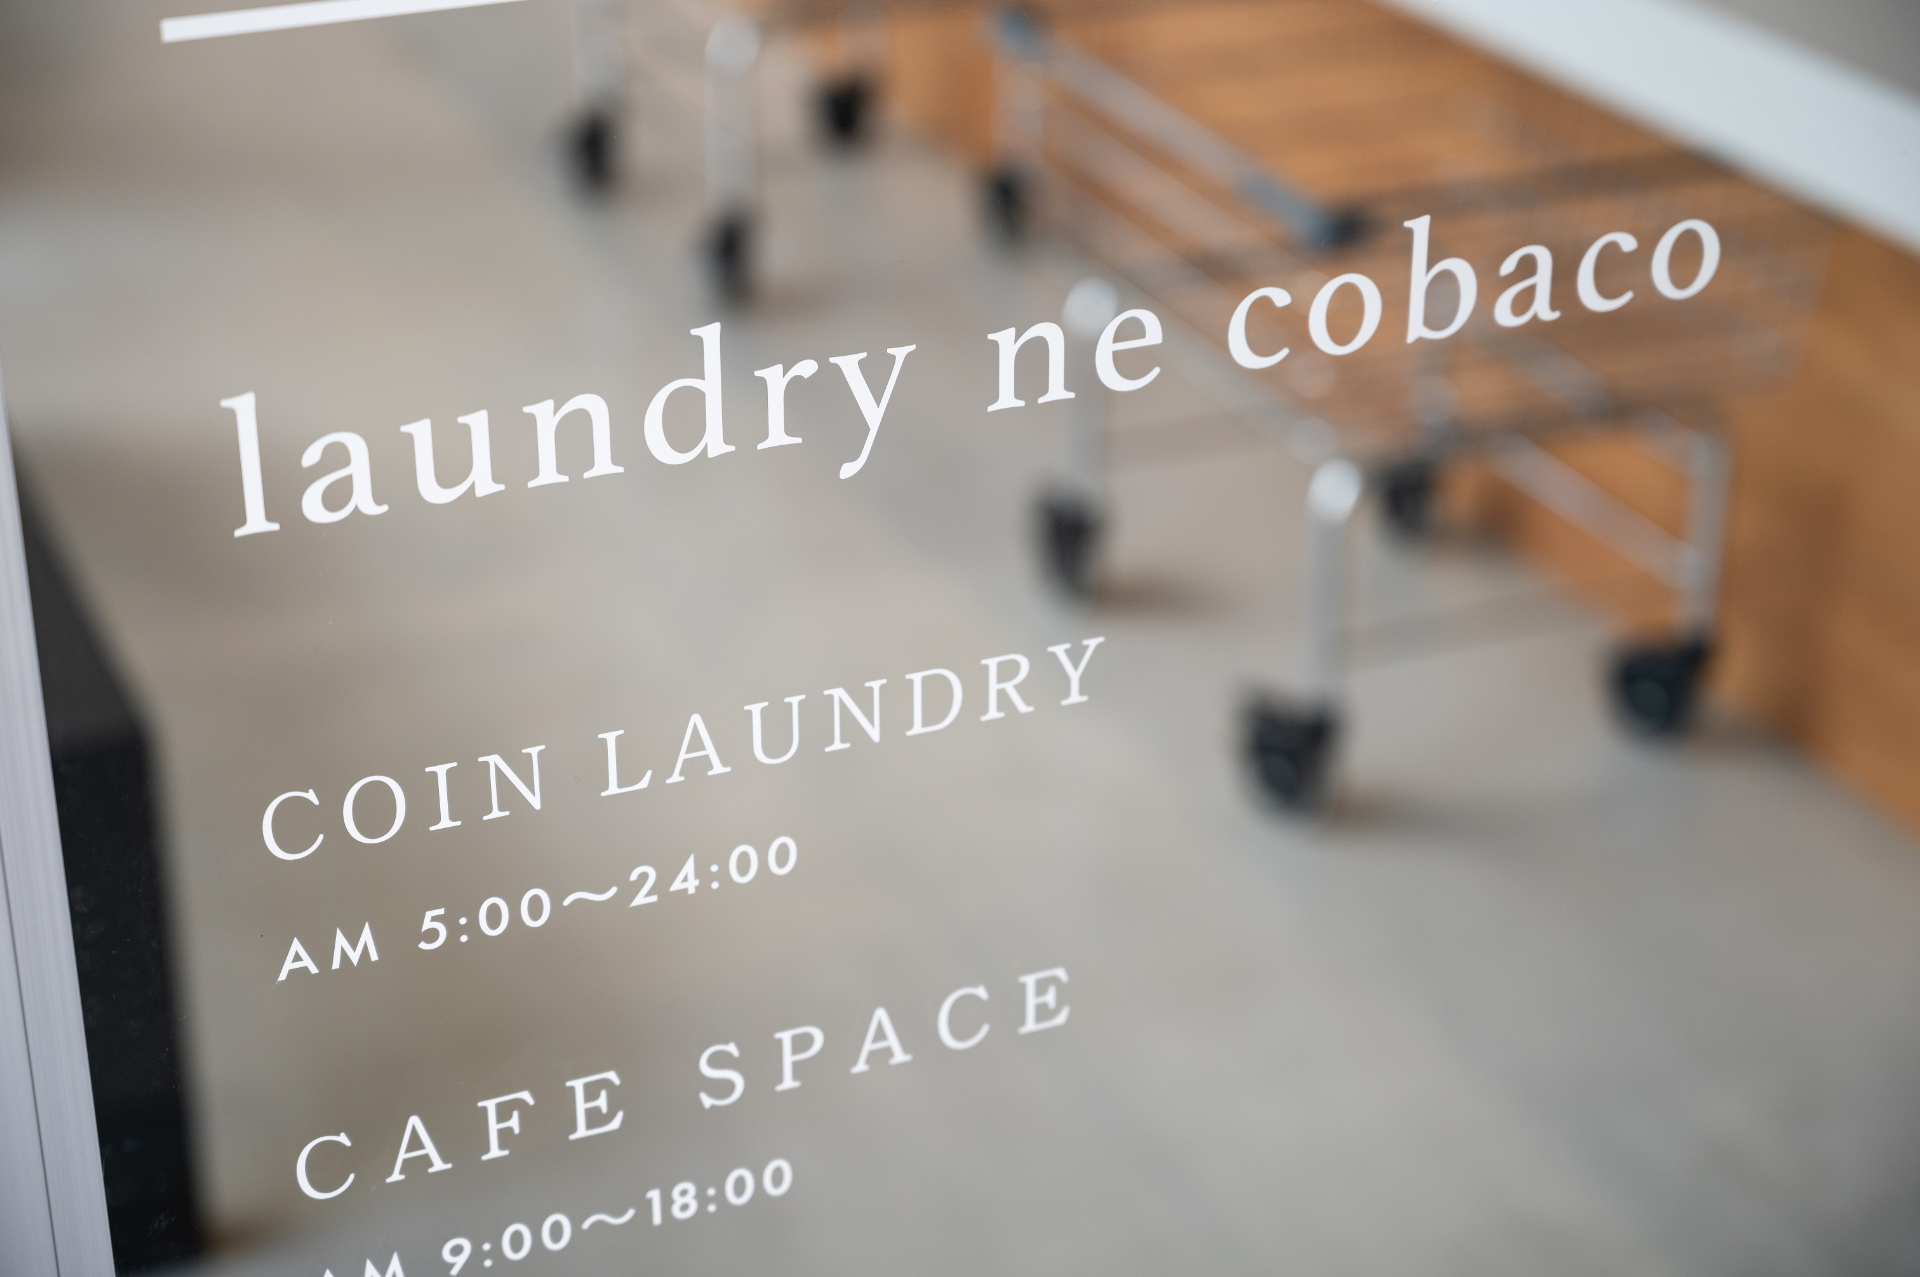 建築-laundry ne cobacoの画像